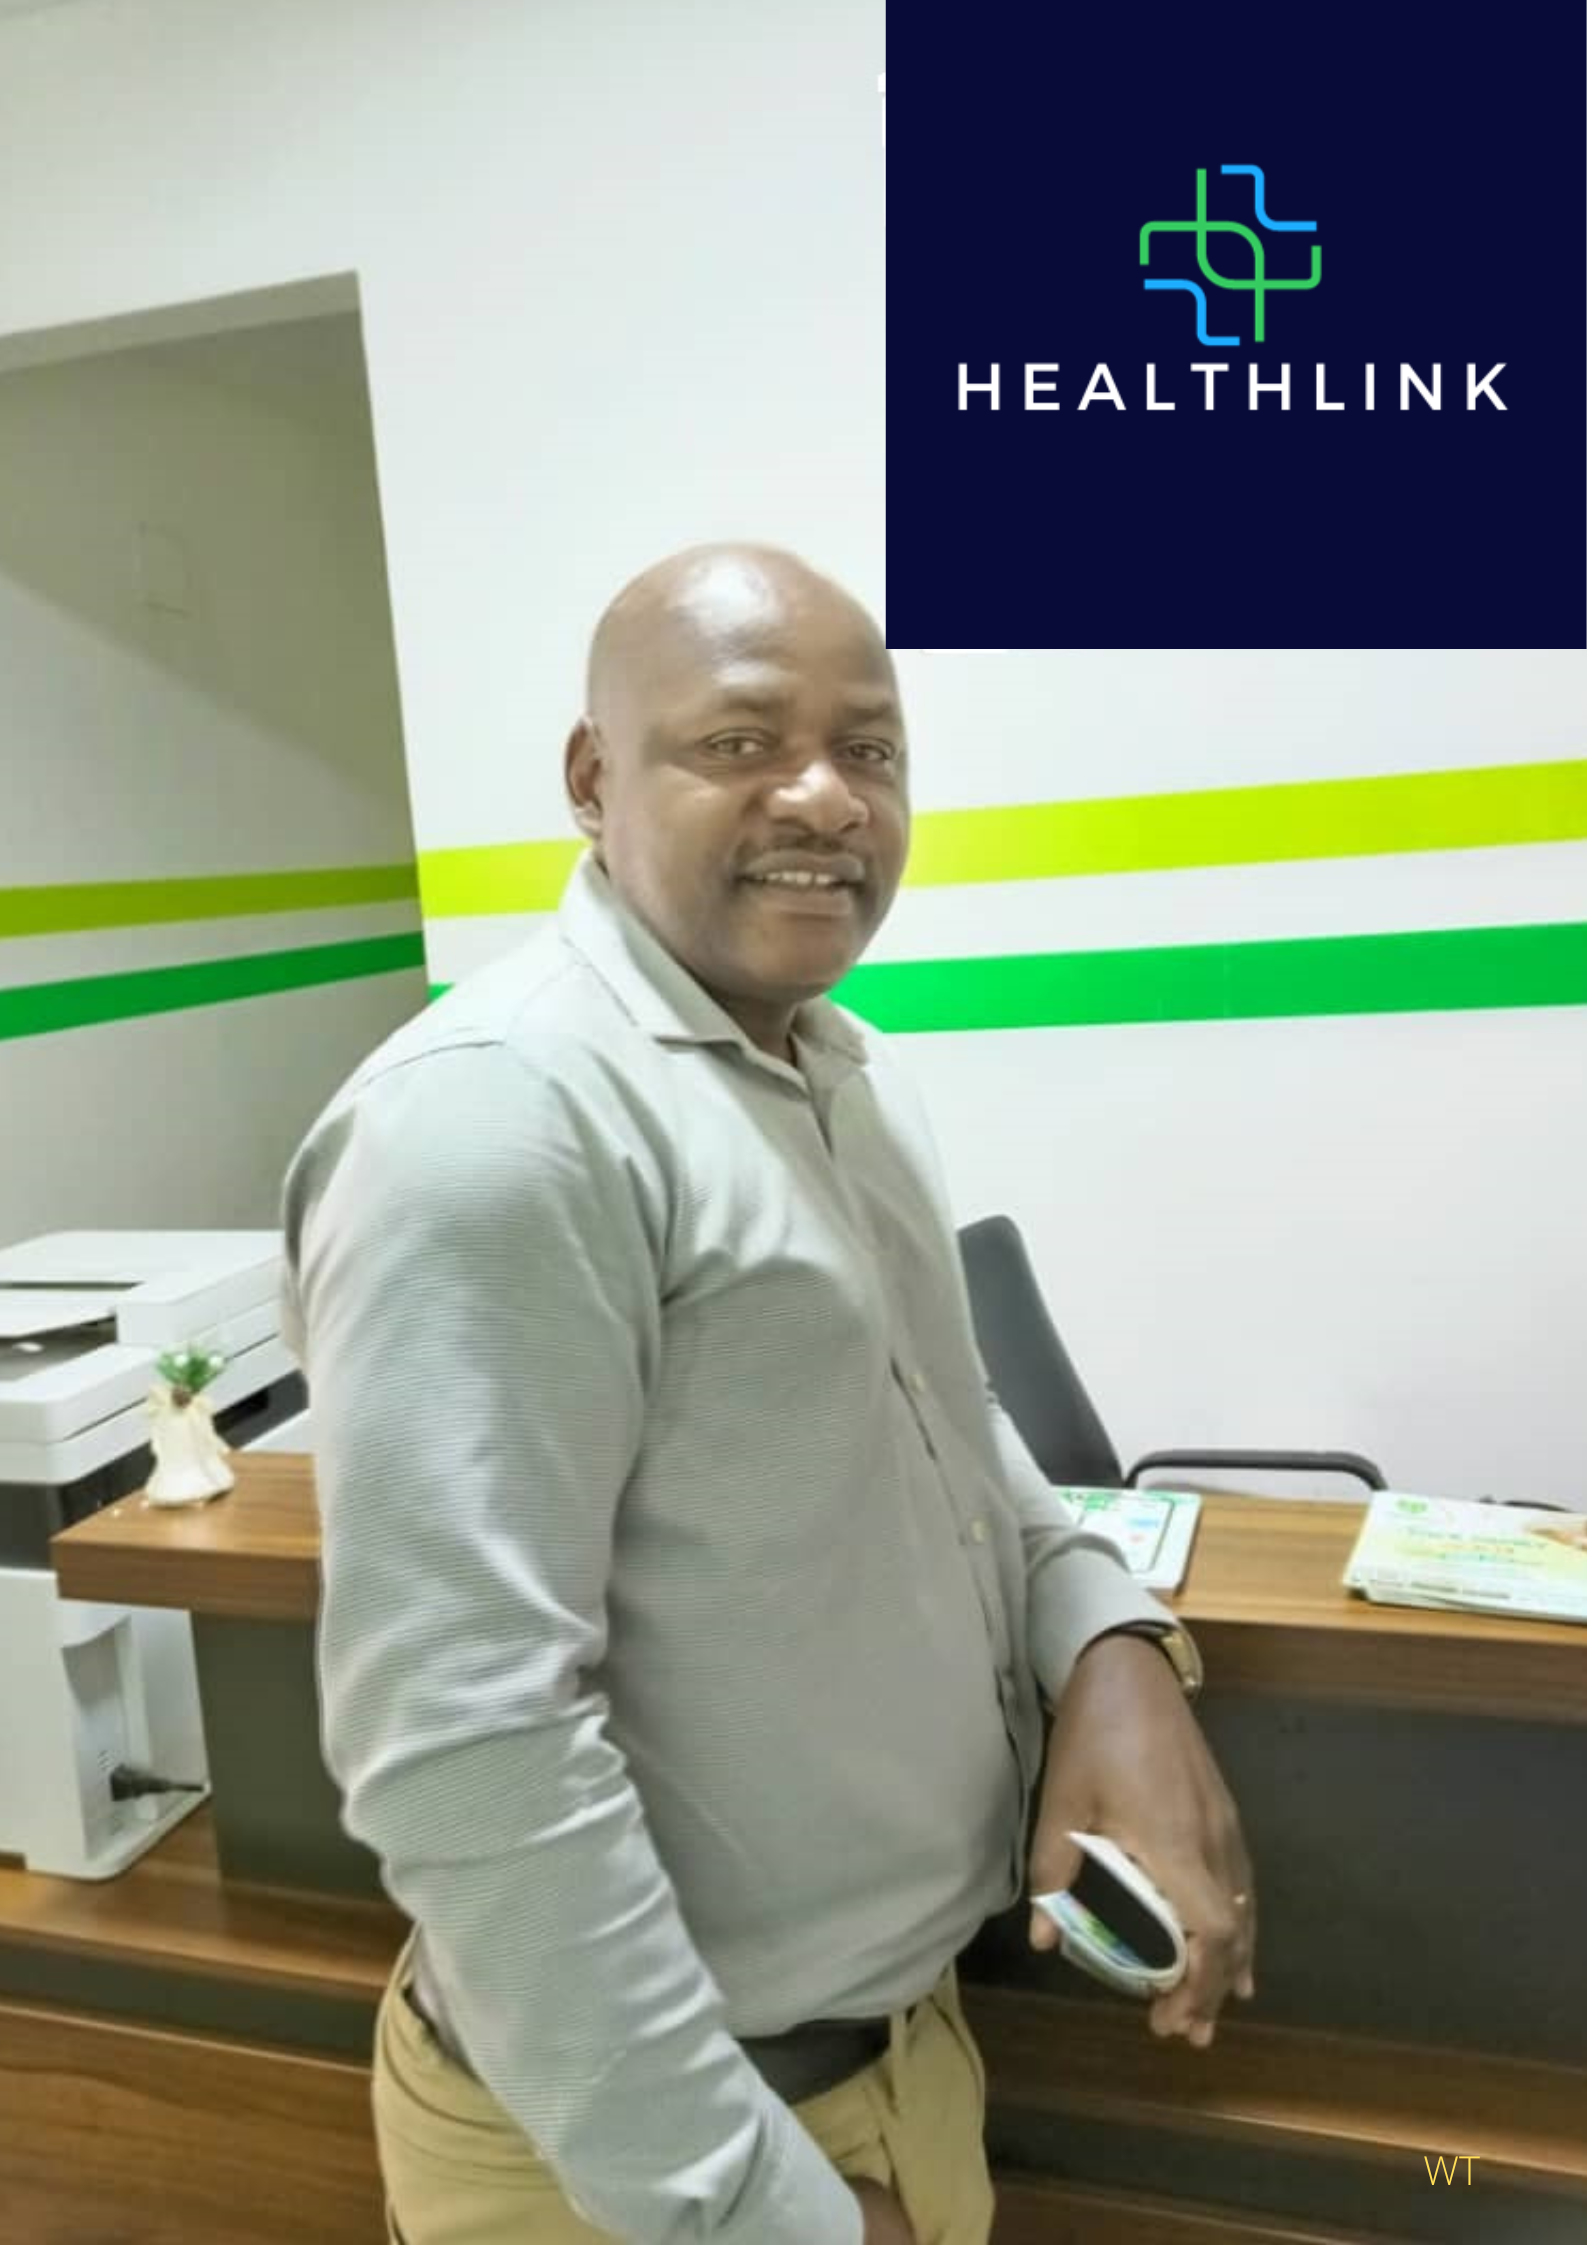 Healthlink reception